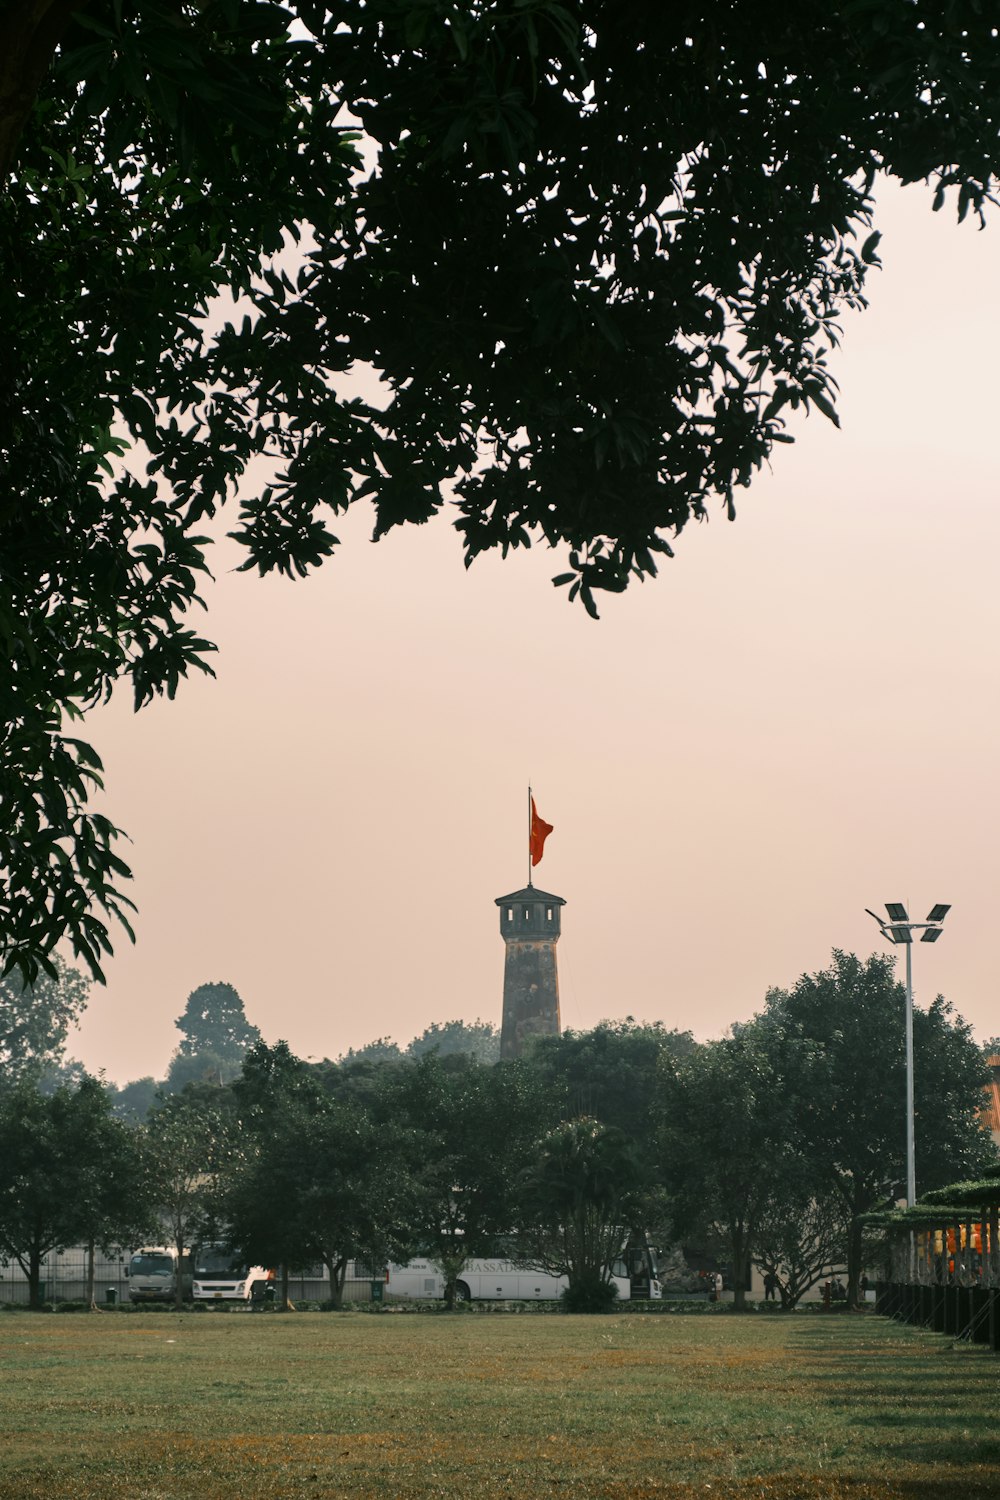 uma alta torre do relógio elevando-se sobre um parque verde exuberante